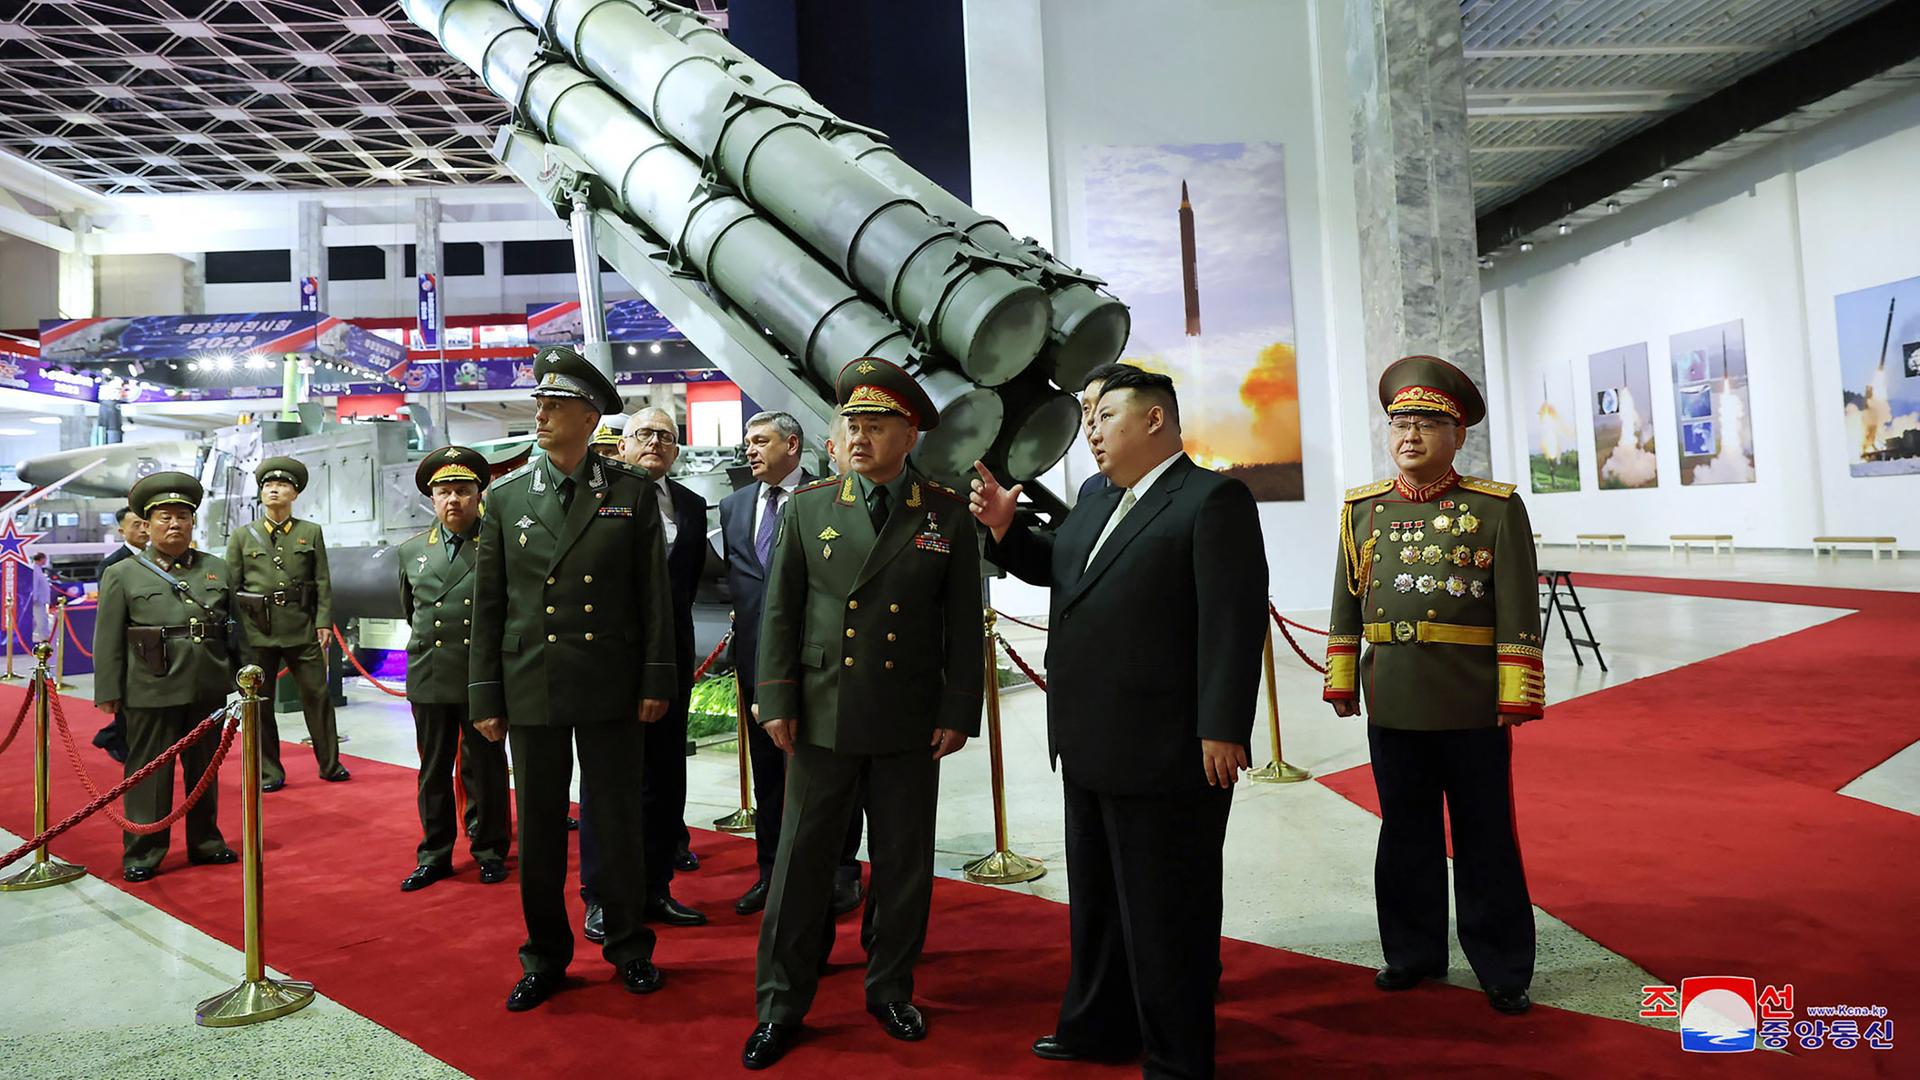 Nordkoreas Machthaber Kim Jong Un (2. v. r.) beim Besuch des Waffenausstellung mit dem russischen Verteidigungsminister Sergej Schoigu (3. v. r.) und Mitgliedern der Militärdelegation in Pjöngjang.